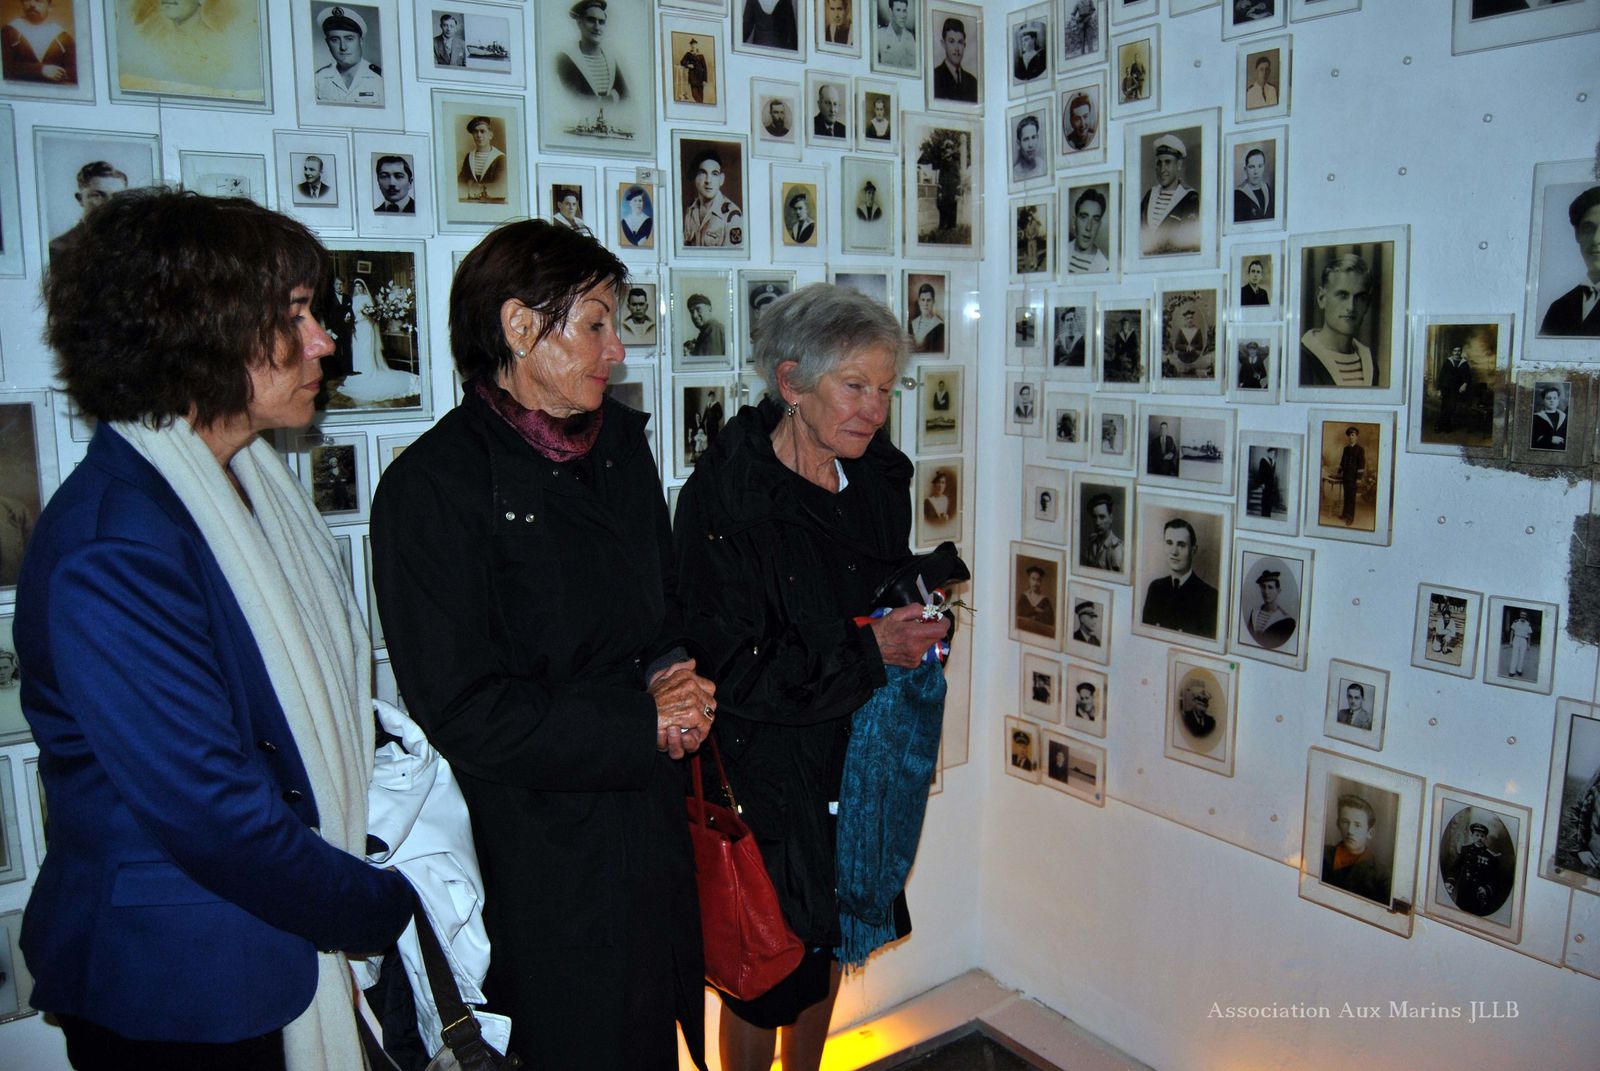 10 mai 2013-Inauguration de l'exposition et cérémonie consacrée à la mémoire des marins et des personnels civils de la frégate Laplace morts pour la France le 16 septembre 1950.
Photographies : Jean-Luc Le Bris